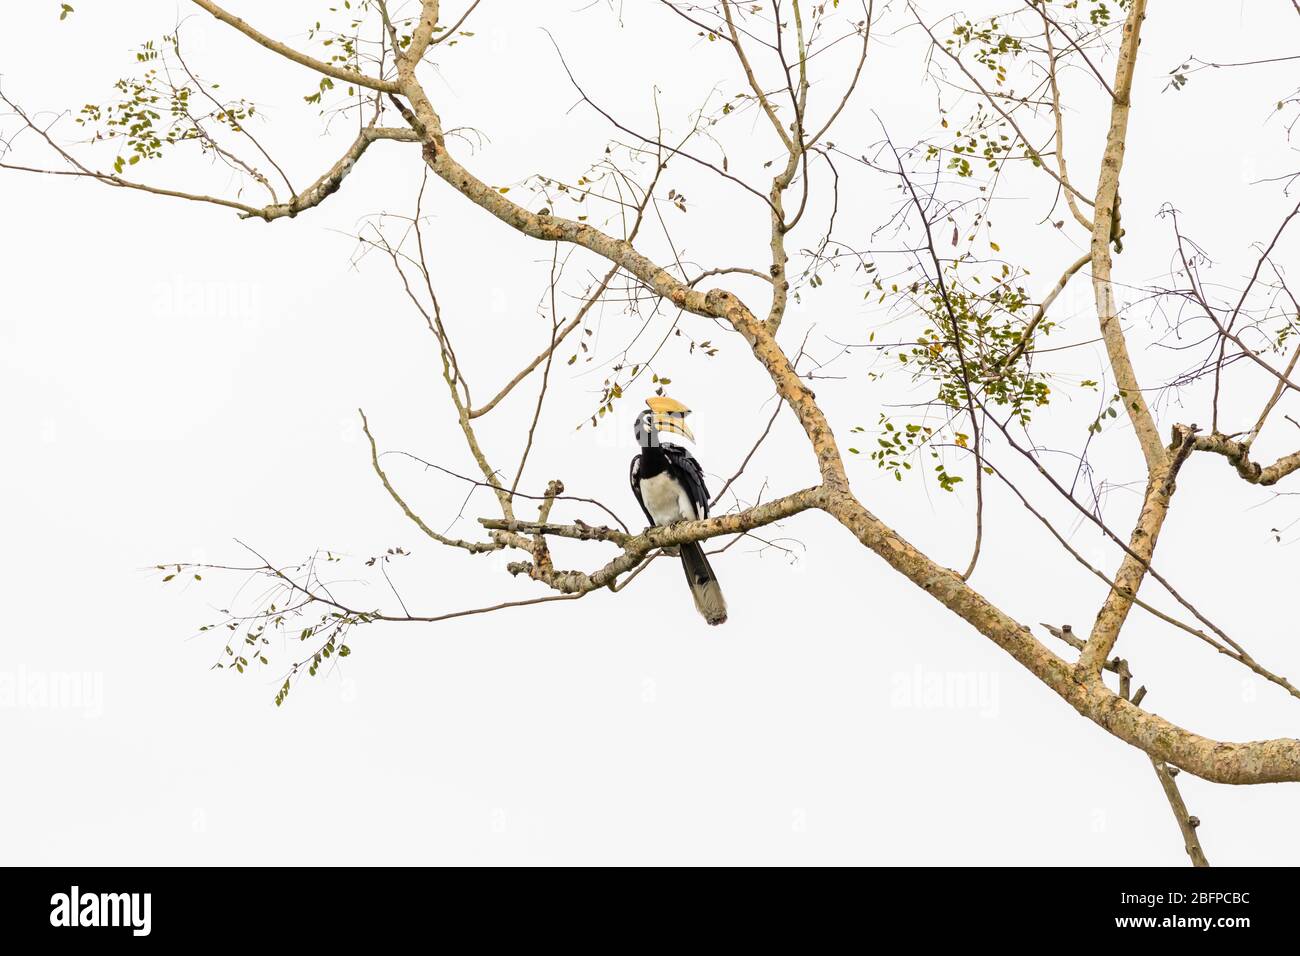 Grand charme indien (Buceros bicornis) perché sur une branche d'un arbre dans le parc national de Kaziranga, Assam, nord-est de l'Inde Banque D'Images